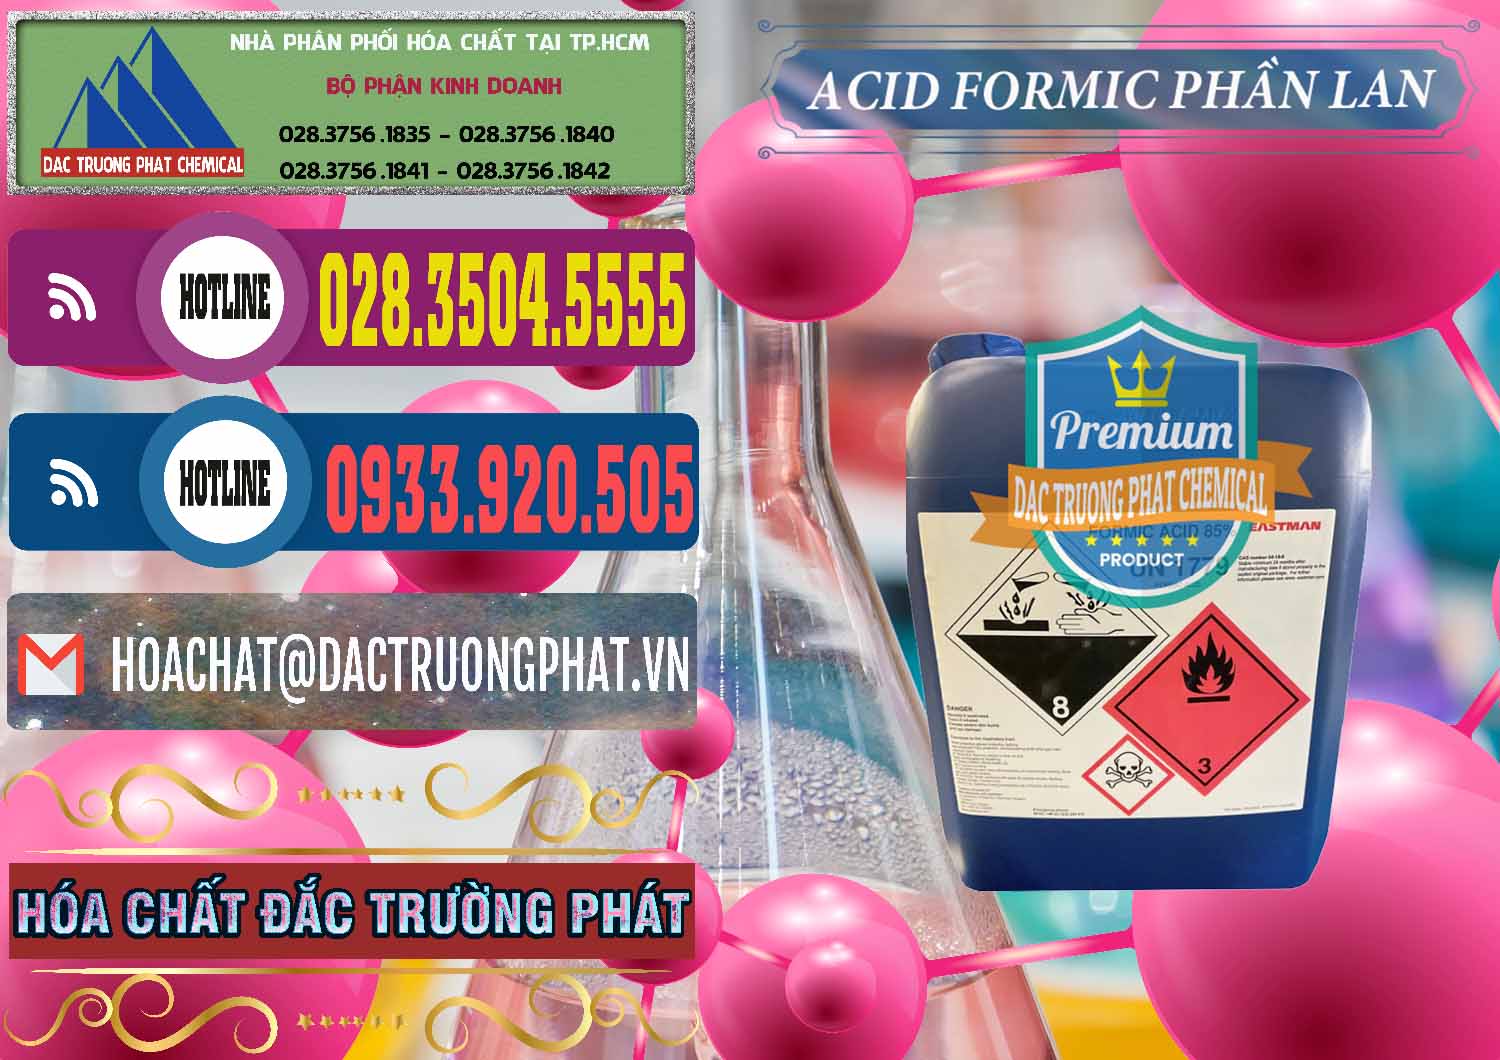 Công ty cung cấp & bán Acid Formic - Axit Formic Phần Lan Finland - 0376 - Nơi chuyên cung cấp _ kinh doanh hóa chất tại TP.HCM - muabanhoachat.com.vn